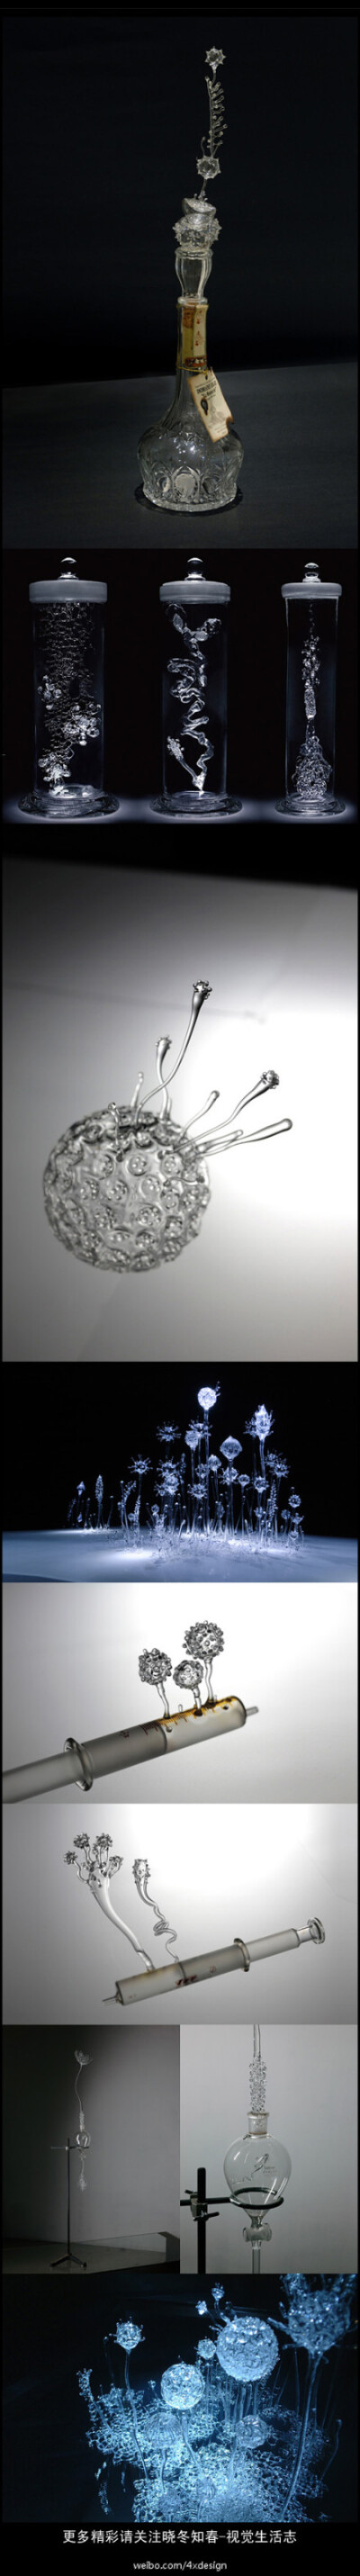 玻璃变形记----日本艺术家青木美哥的这组作品名为《Singing Glass》（歌唱的玻璃），以玻璃作为材质向观众展示一个奇幻世界。更多精彩请关注@晓冬知春-视觉生活志